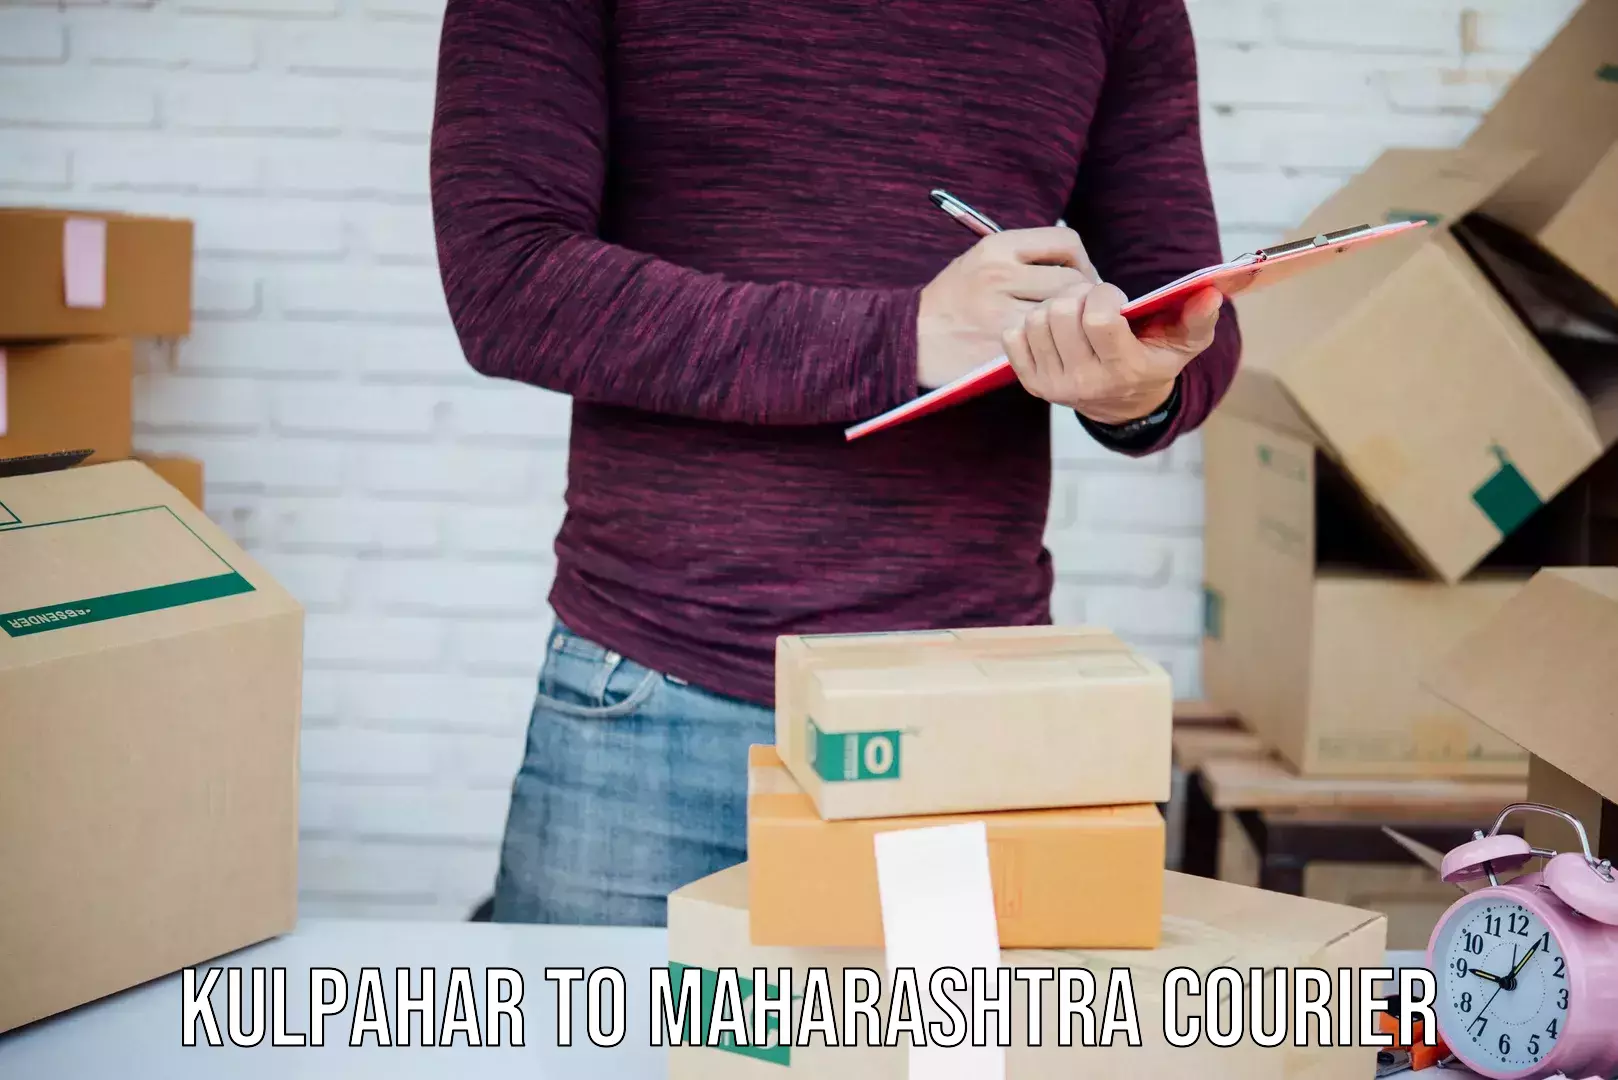 Express mail service Kulpahar to Maharashtra